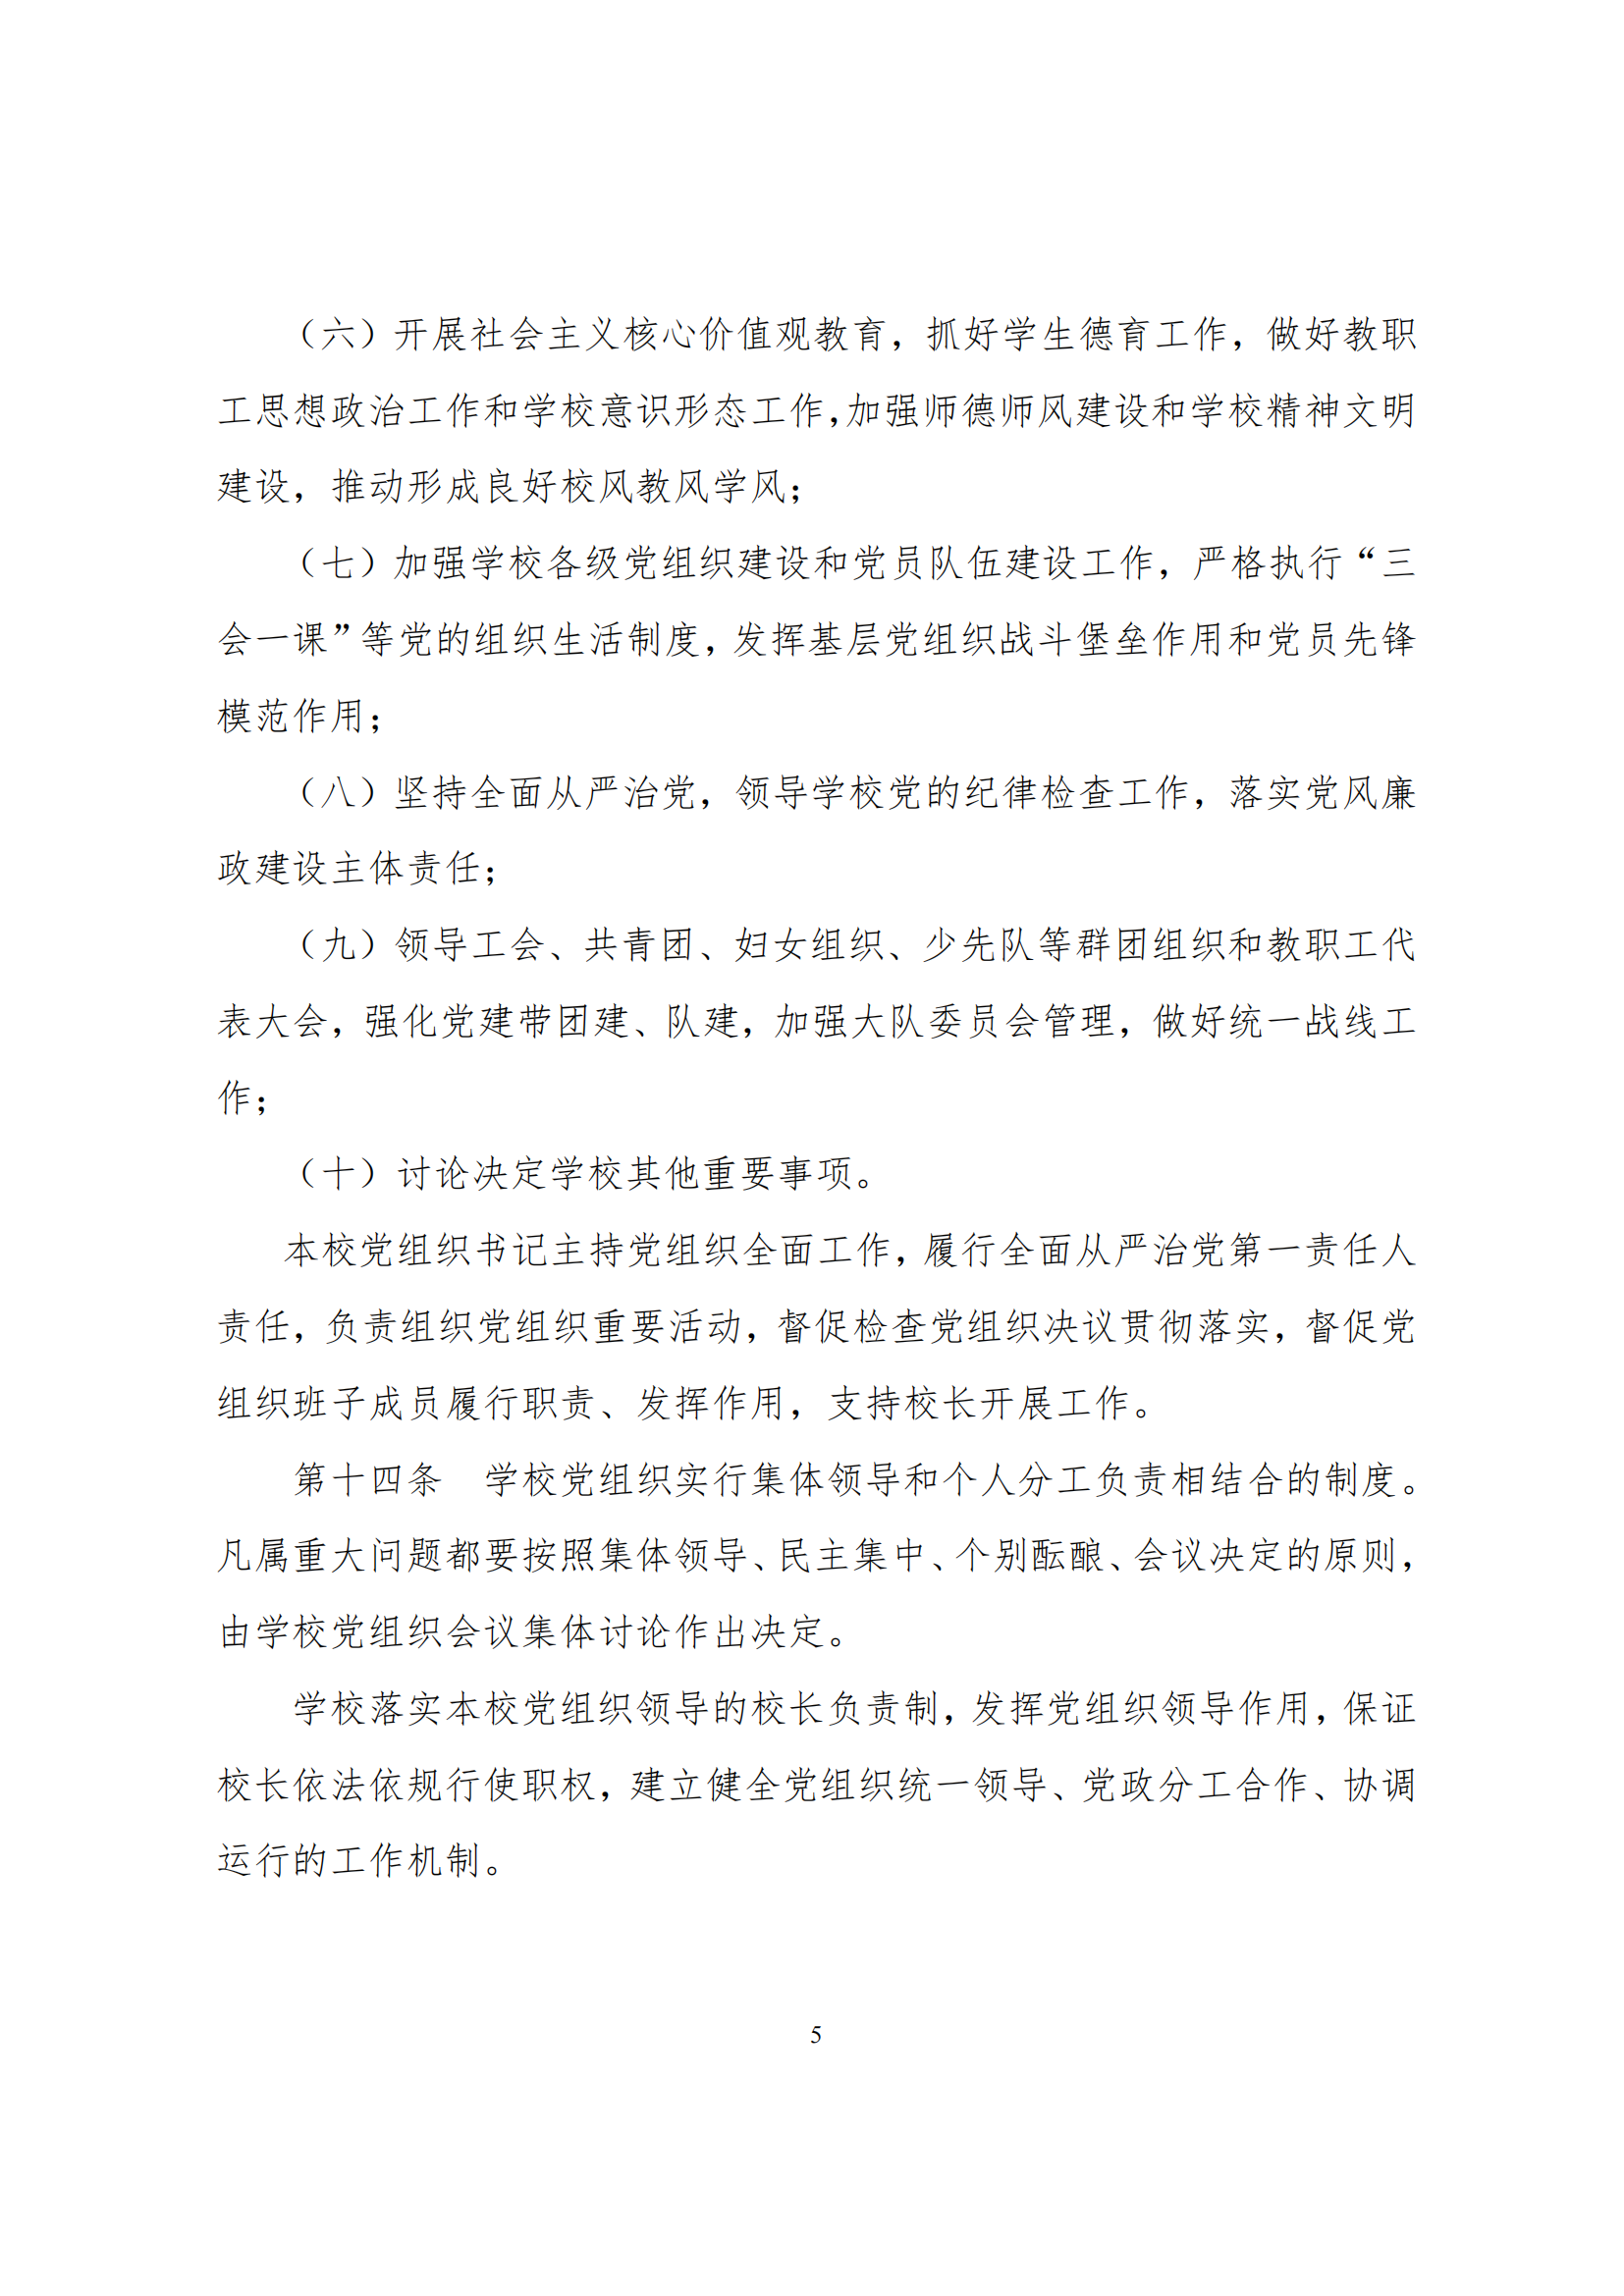 上海市徐汇区求知小学学校章程（提交稿）_04.png